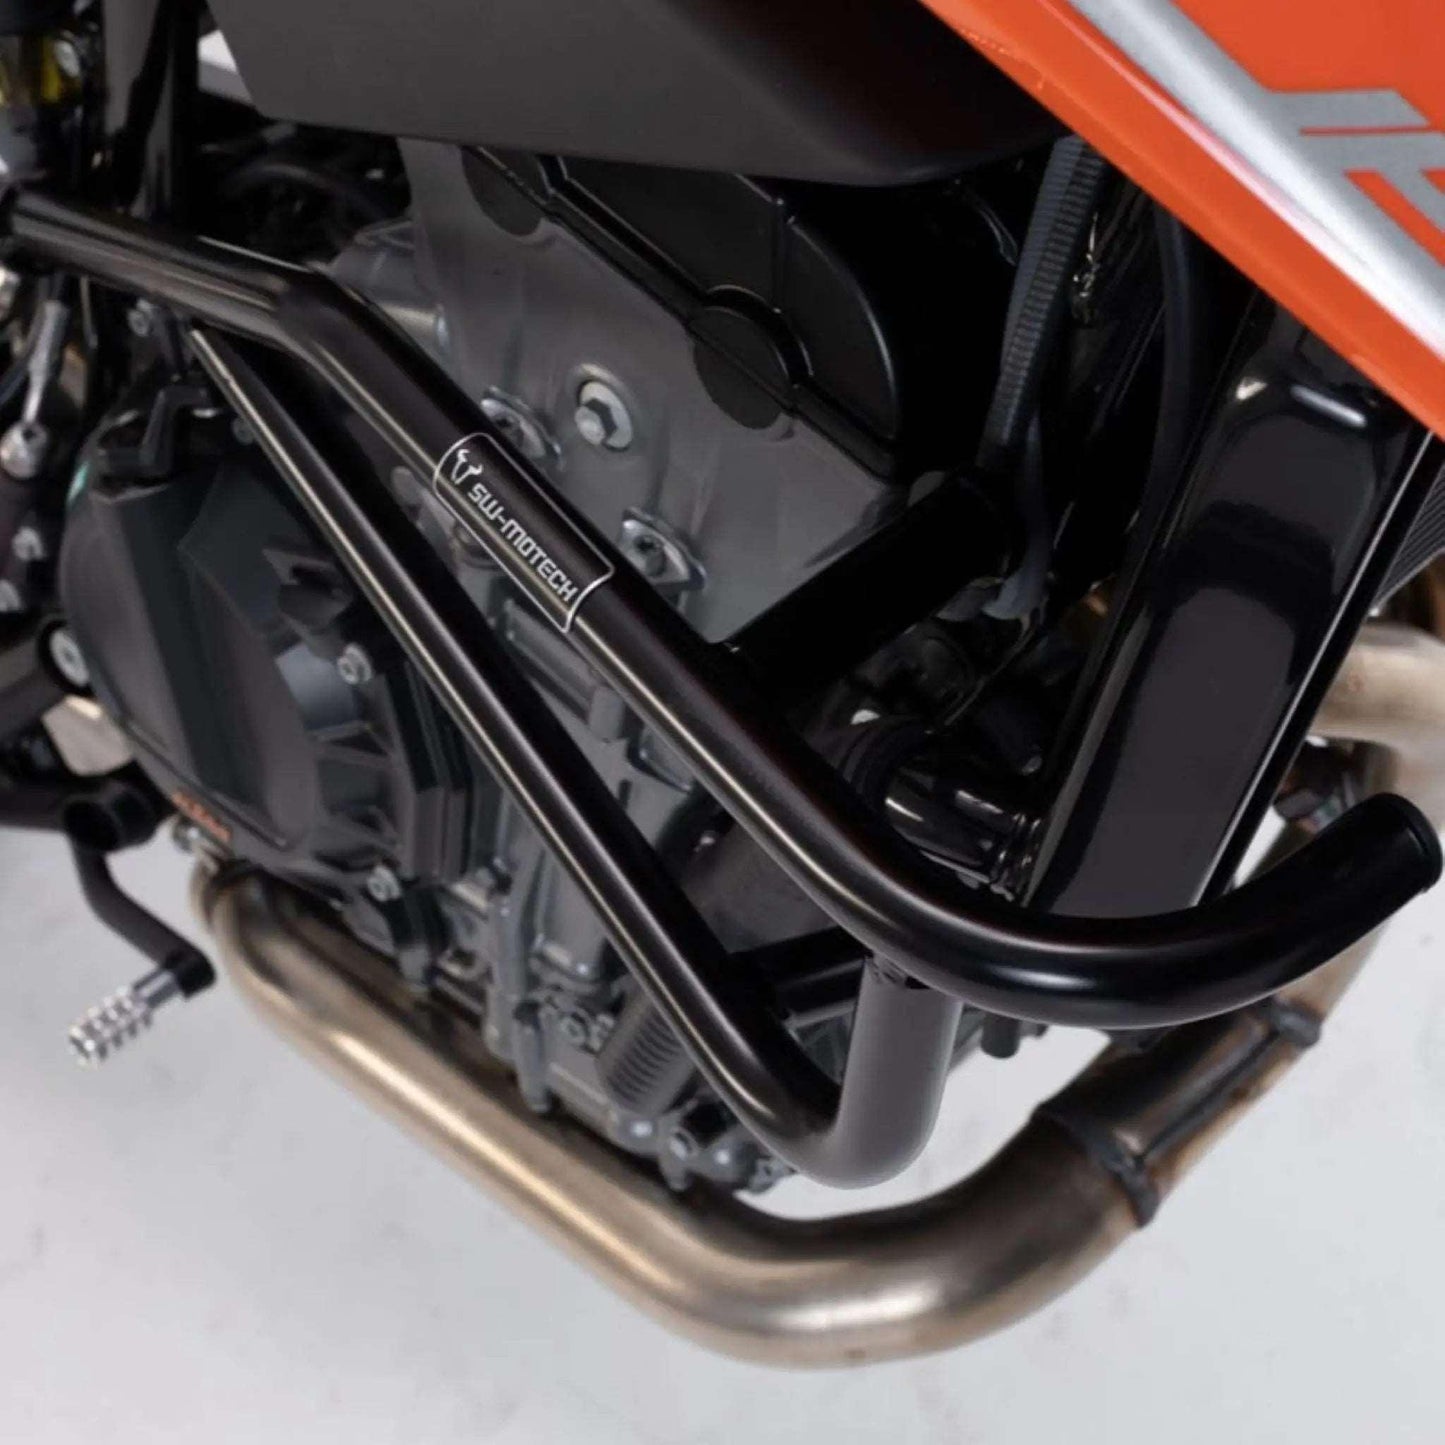 Crashbars SW MOTECH | KTM DUKE 790/ 890/ 890R - GEN PERFORMANCE